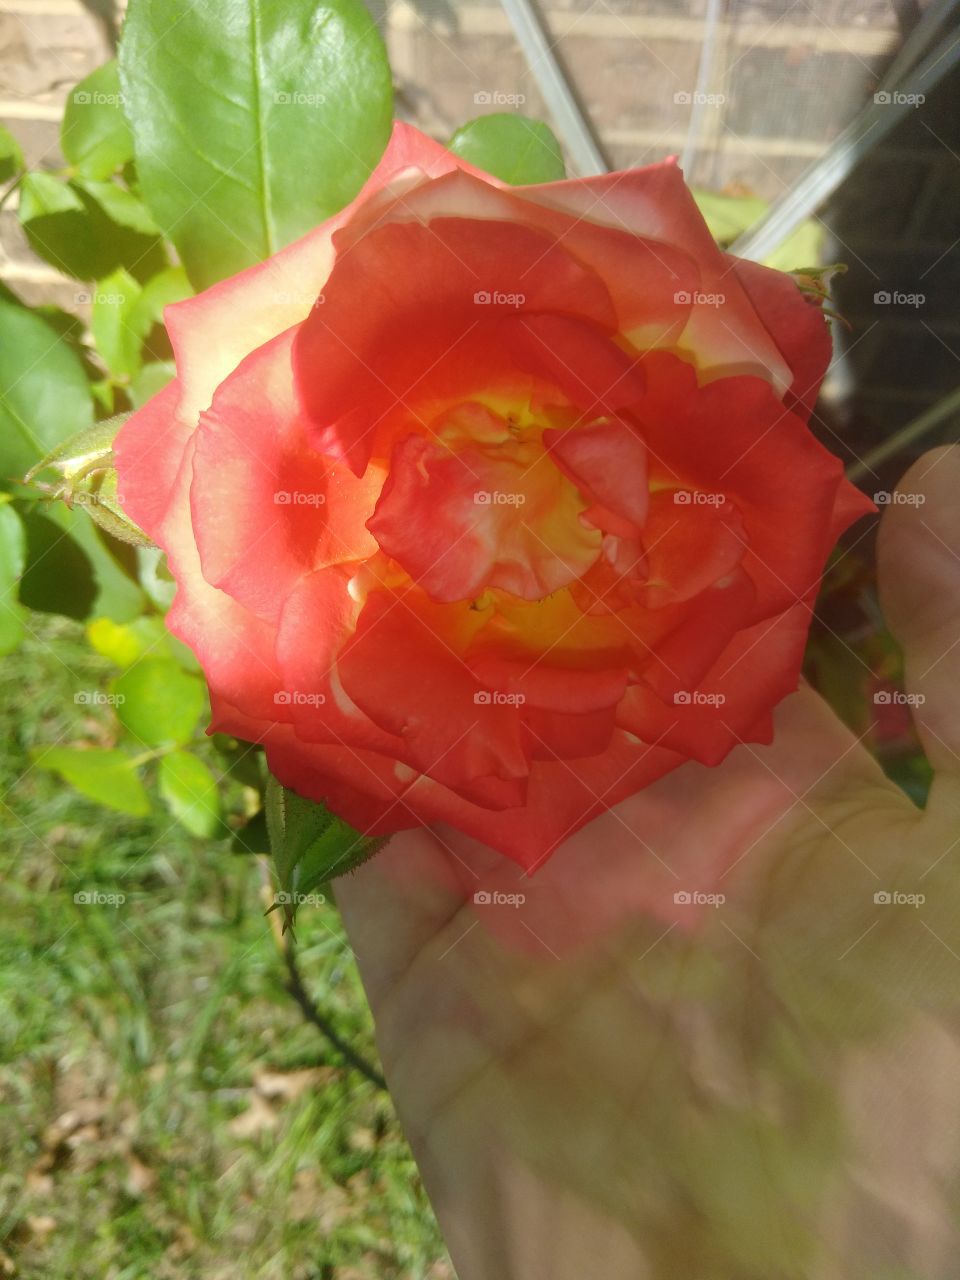 beautiful orangish reddish rose